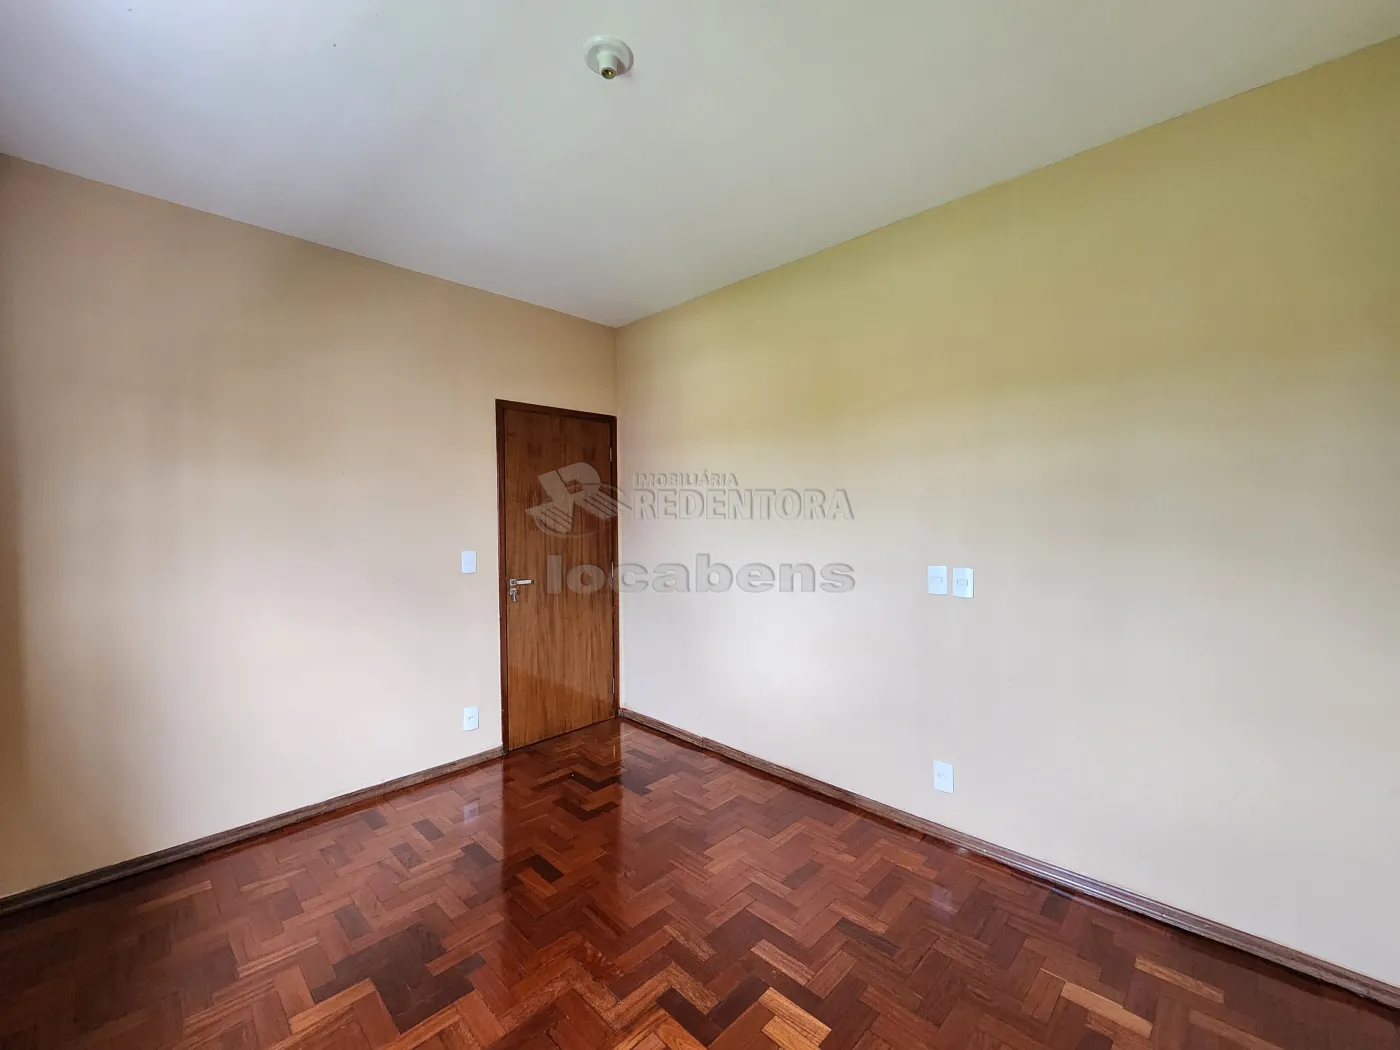 Alugar Casa / Sobrado em São José do Rio Preto apenas R$ 1.600,00 - Foto 17